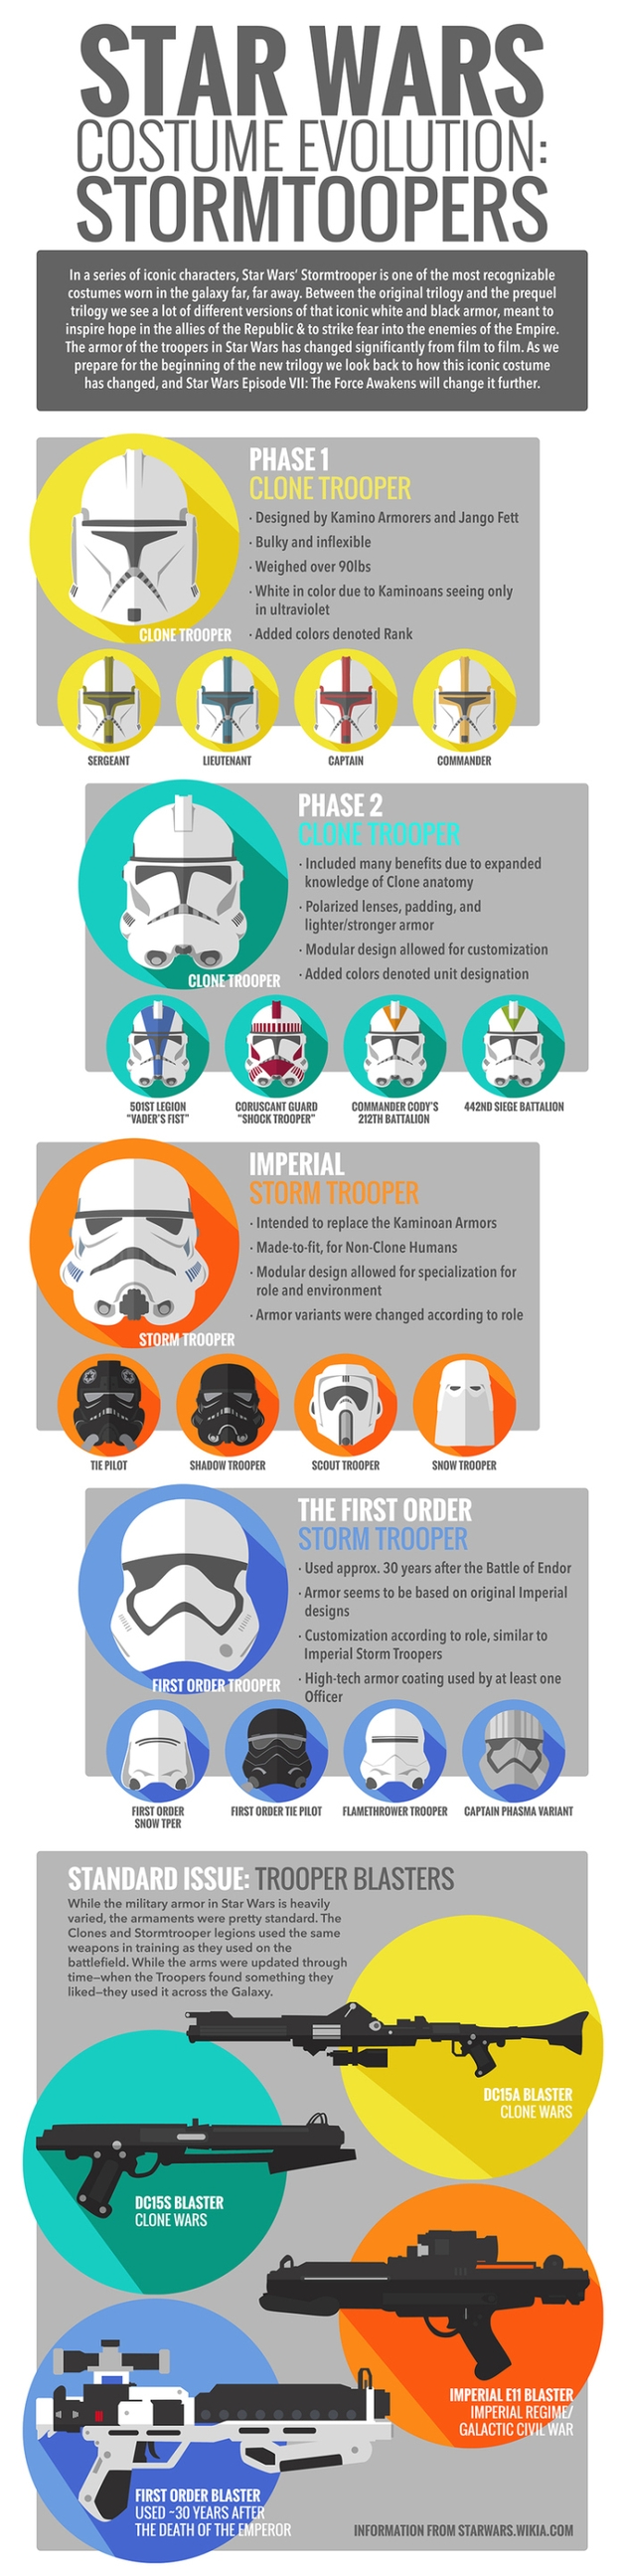 Star Wars: infográfico mostra a evolução visual dos stormtroopers